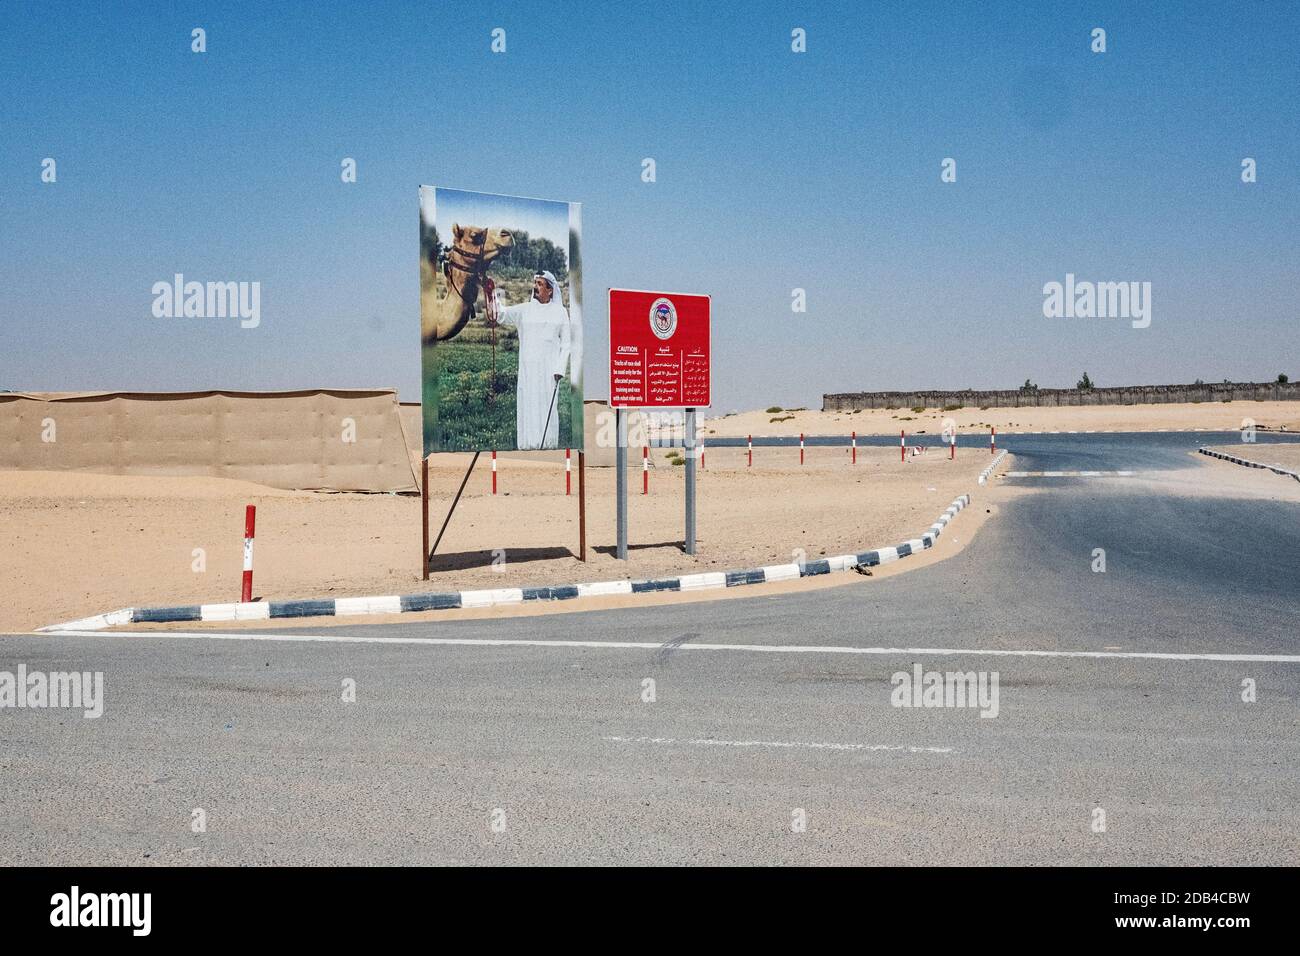 Vereinigte Arabische Emirate / Al Dhaid / Eingang des Al Dhaid Camel Race Track in der zentralen Region von Das Emirat Sharjah im Vereinigten Arabischen Emira Stockfoto